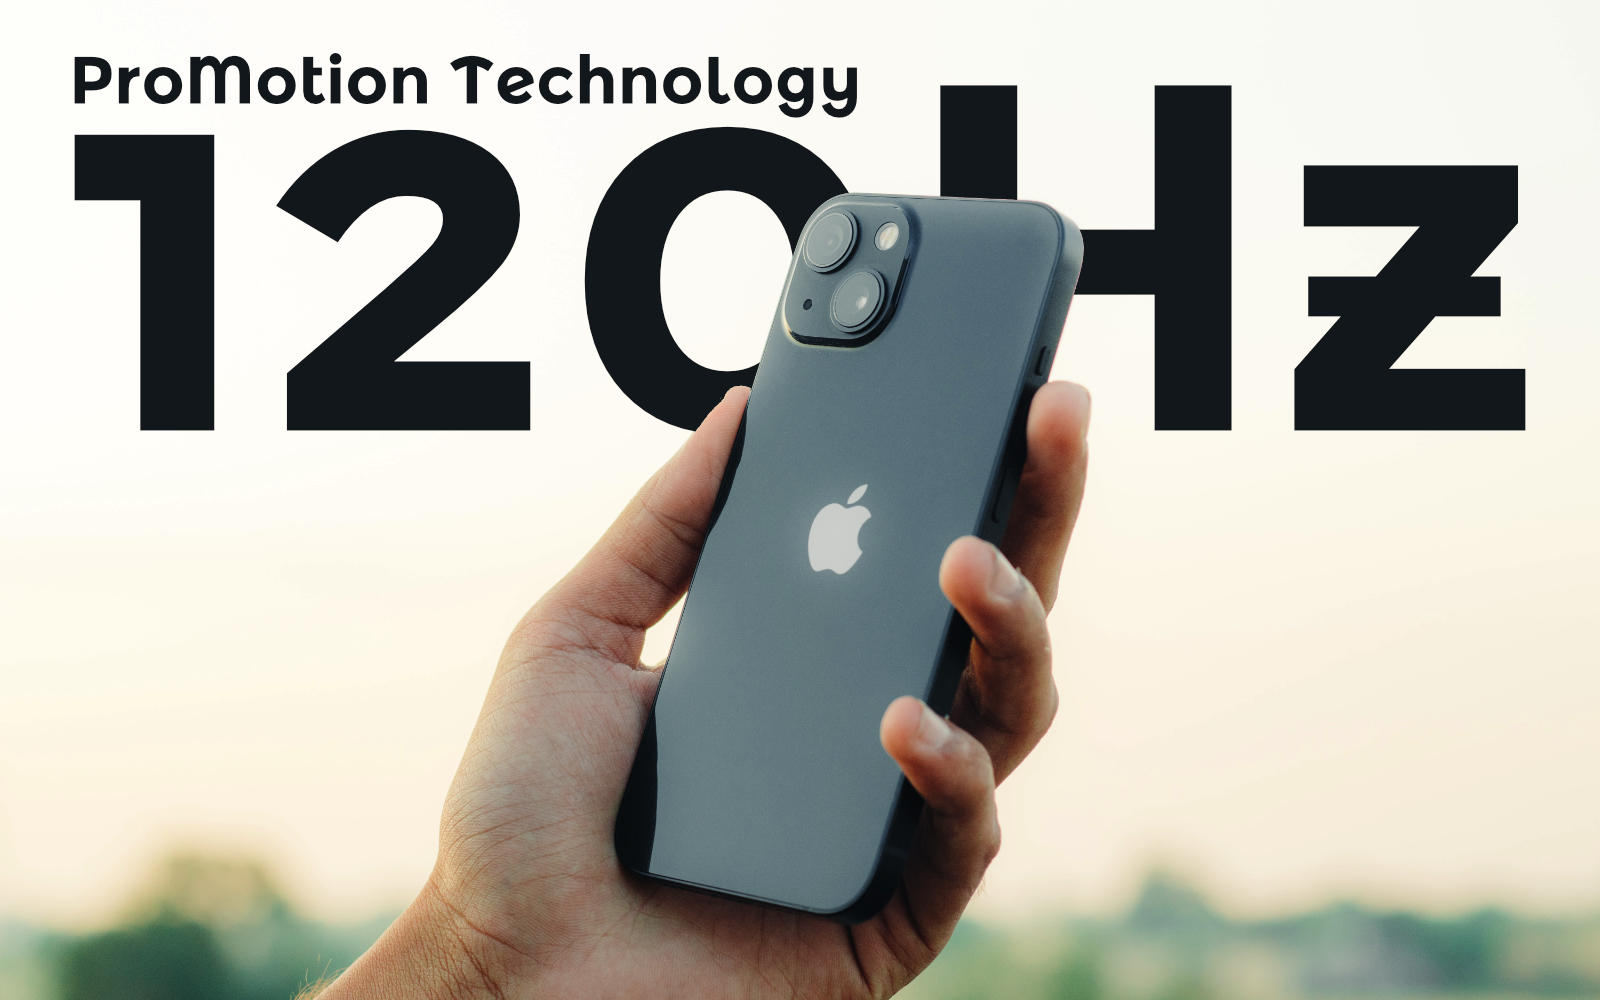 ProMotion-Technology-for-iPhone14-rumor.jpg